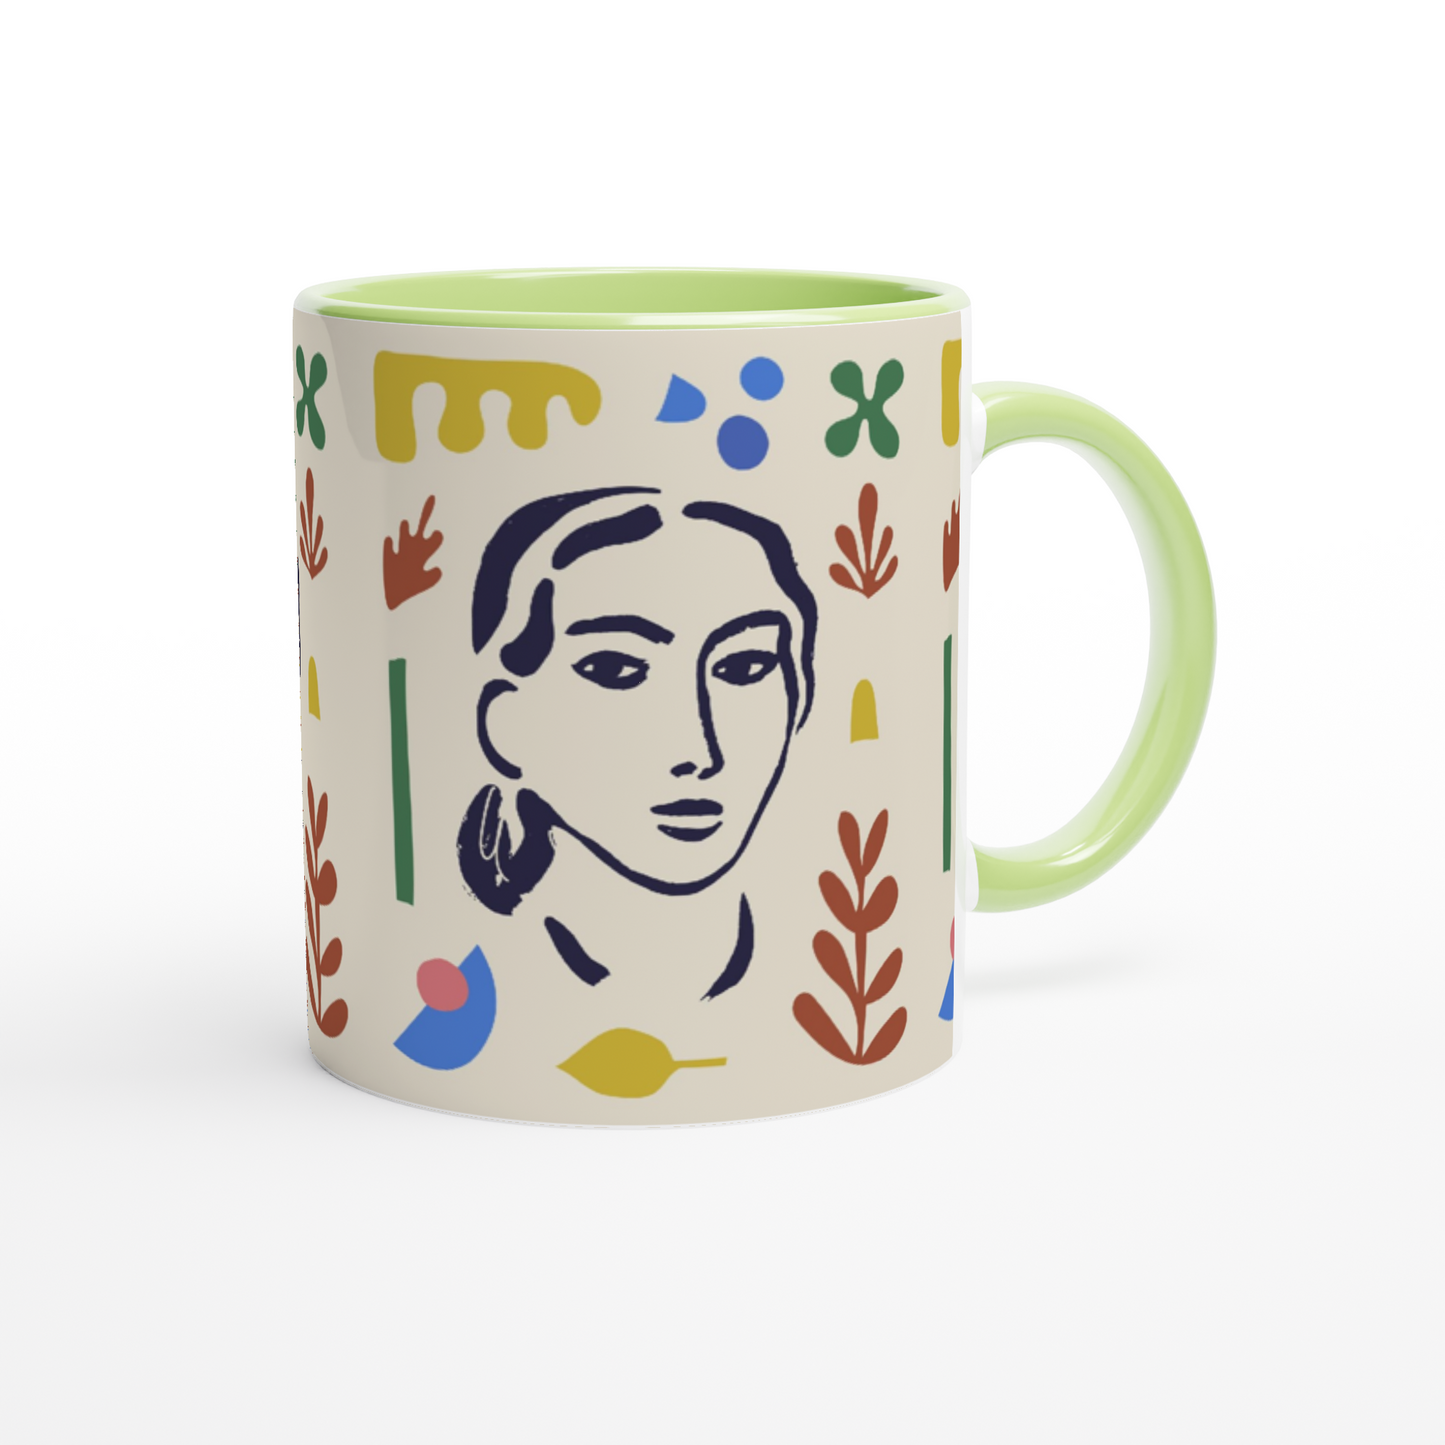 "Isn't she lovely" Ceramic Mug